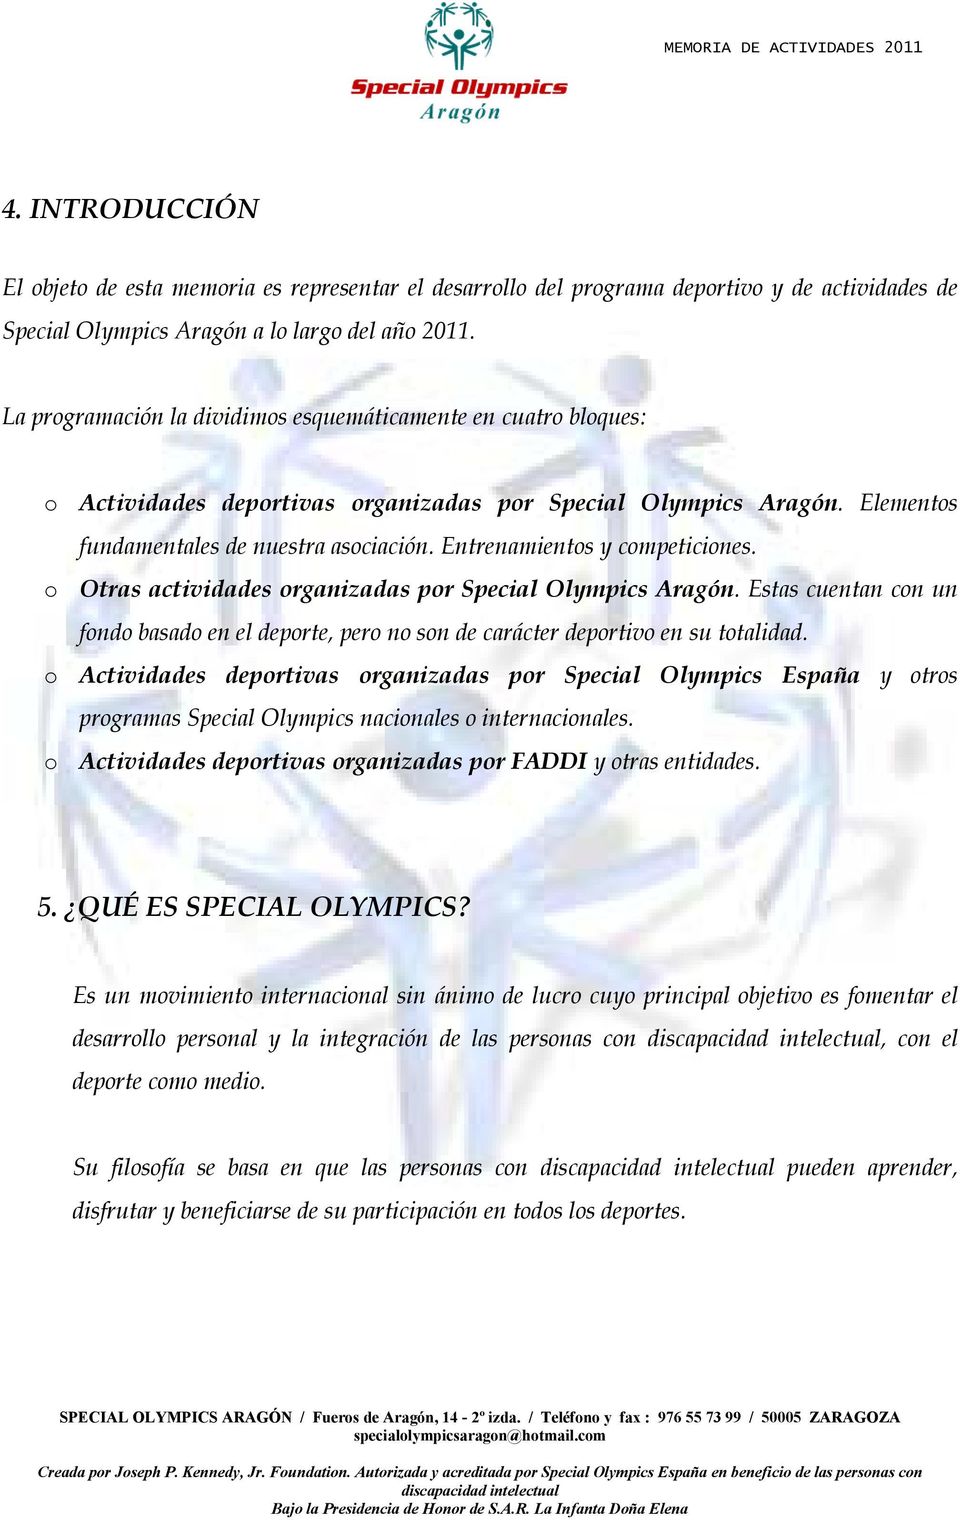 Entrenamientos y competiciones. o Otras actividades organizadas por Special Olympics Aragón. Estas cuentan con un fondo basado en el deporte, pero no son de carácter deportivo en su totalidad.